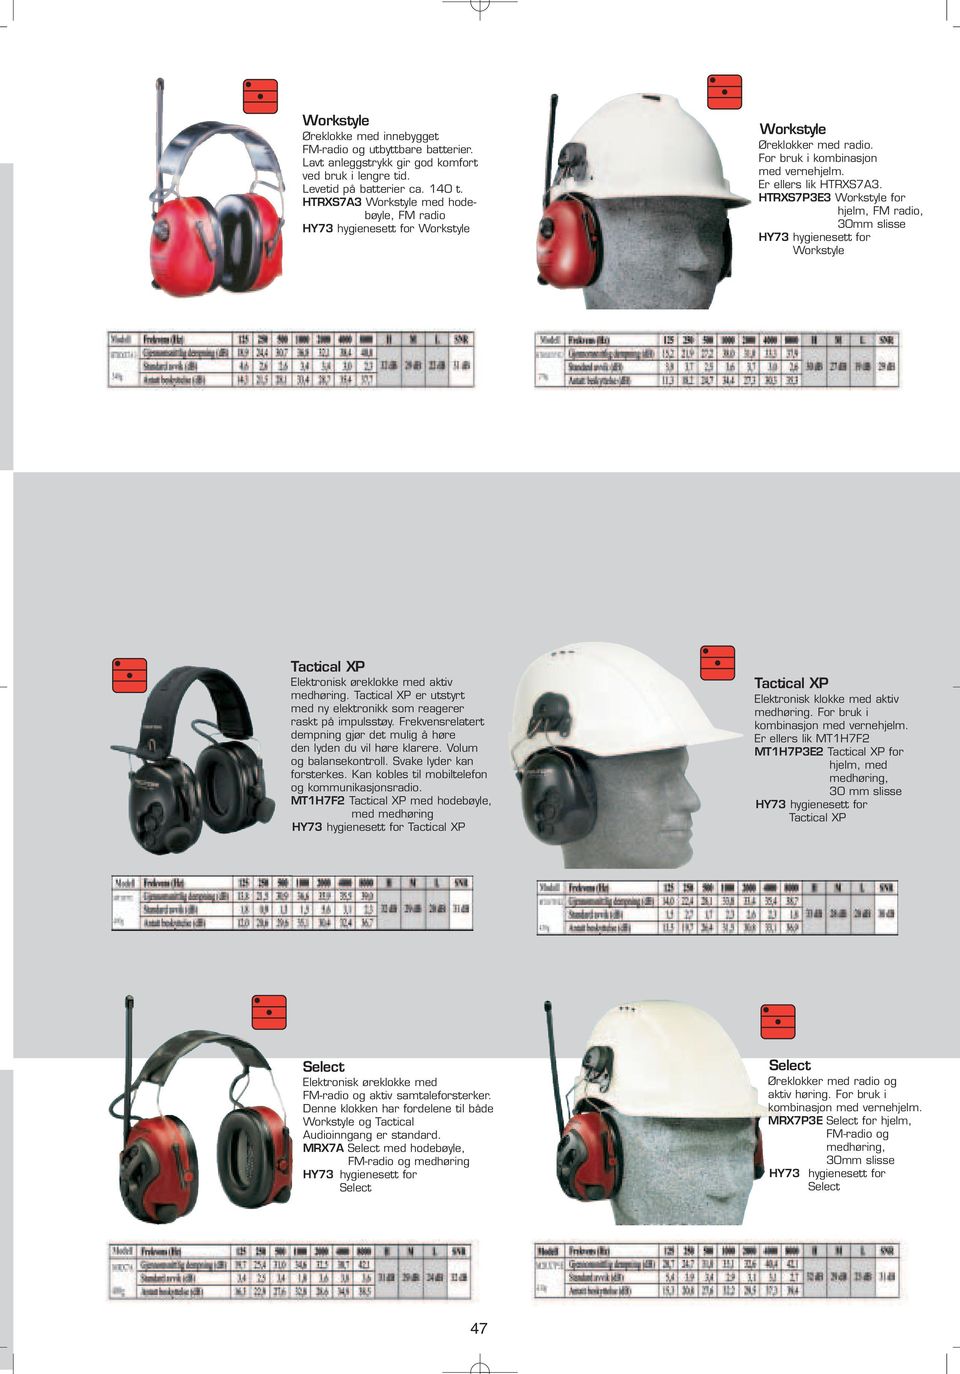 HTRXS7P3E3 Workstyle for hjelm, FM radio, 30mm slisse HY73 hygienesett for Workstyle Tactical XP Elektronisk øreklokke med aktiv medhøring.